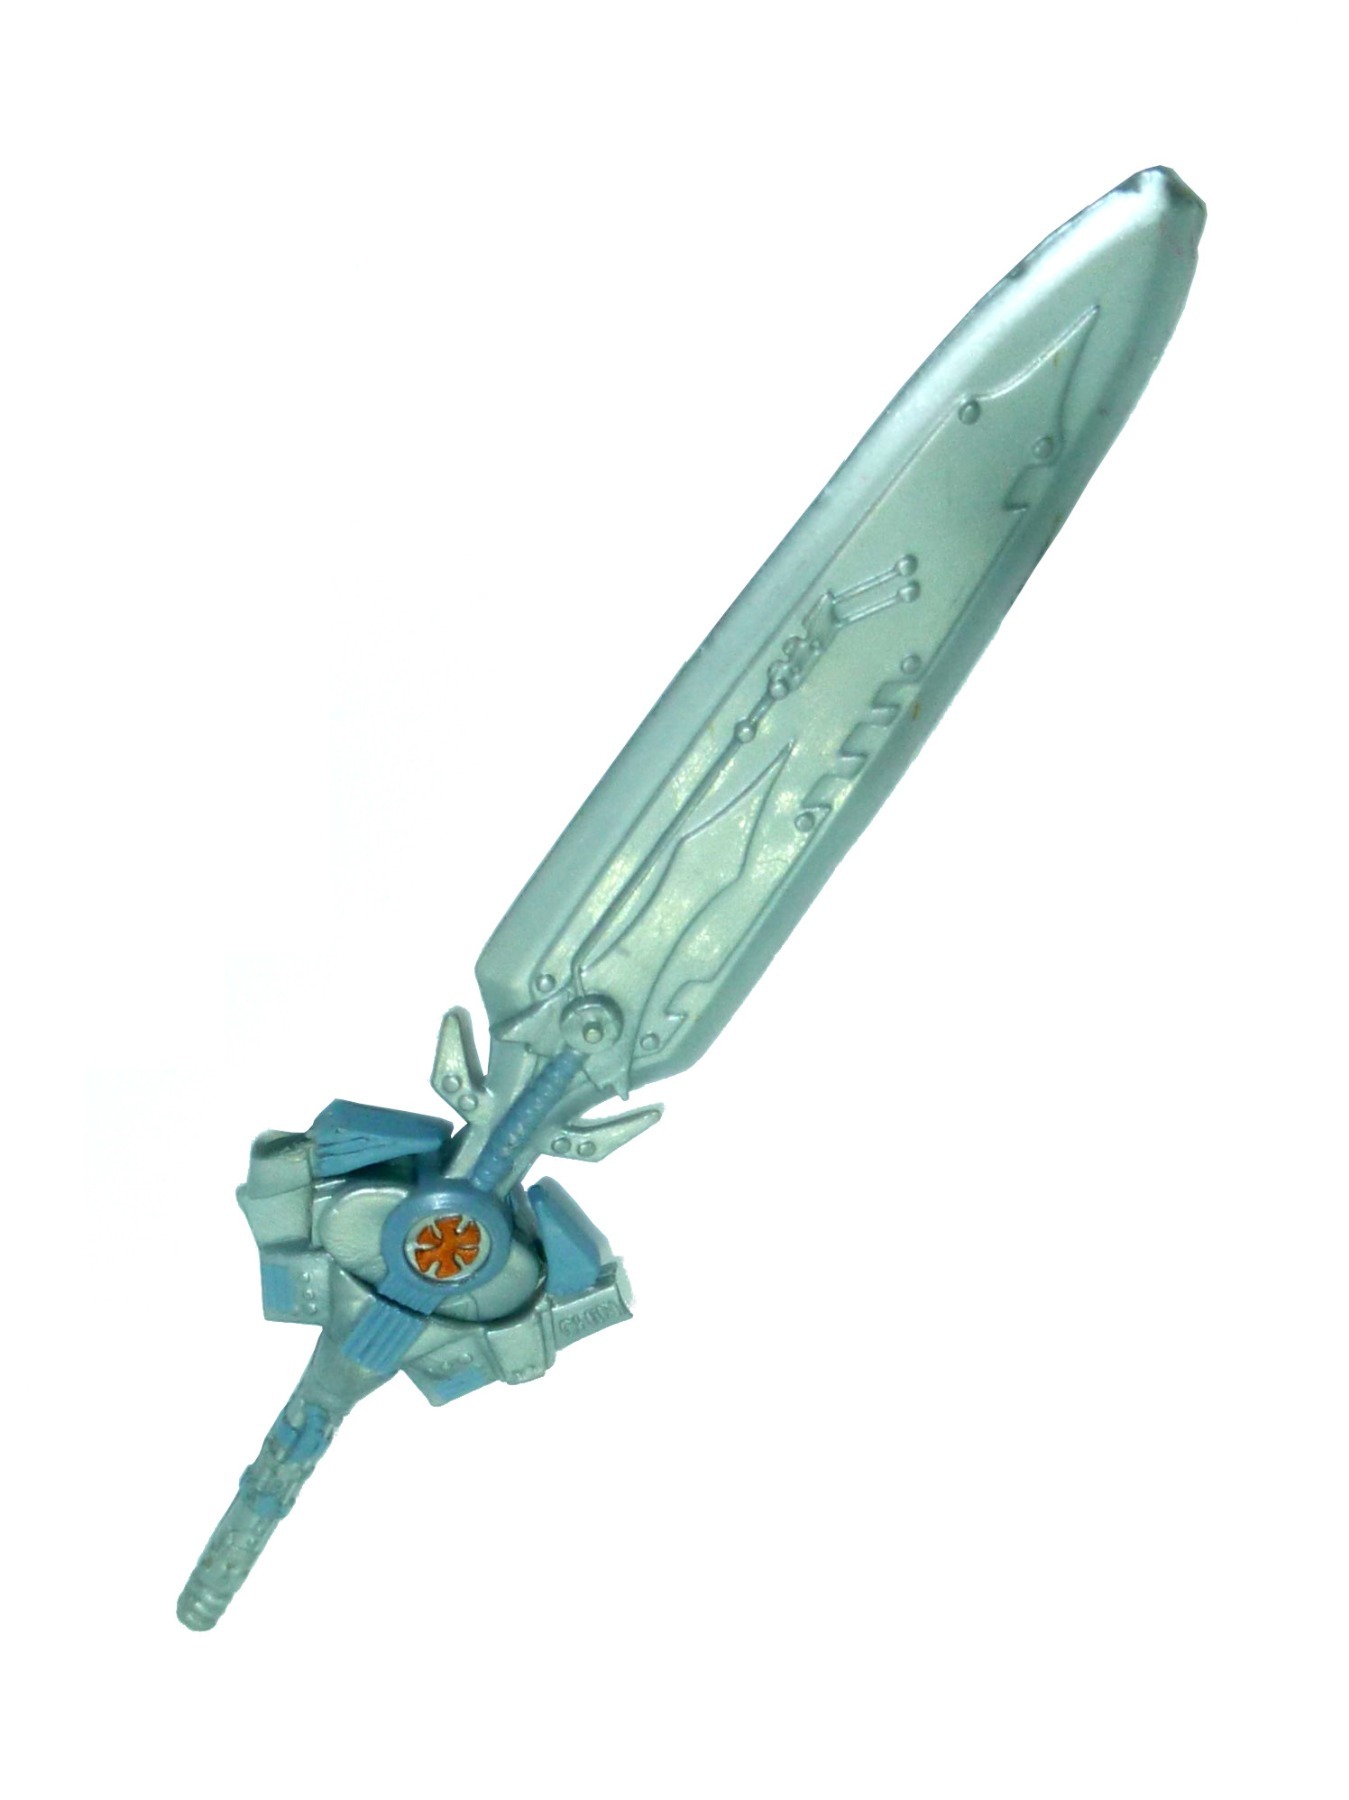 He-Man sword defective accessory